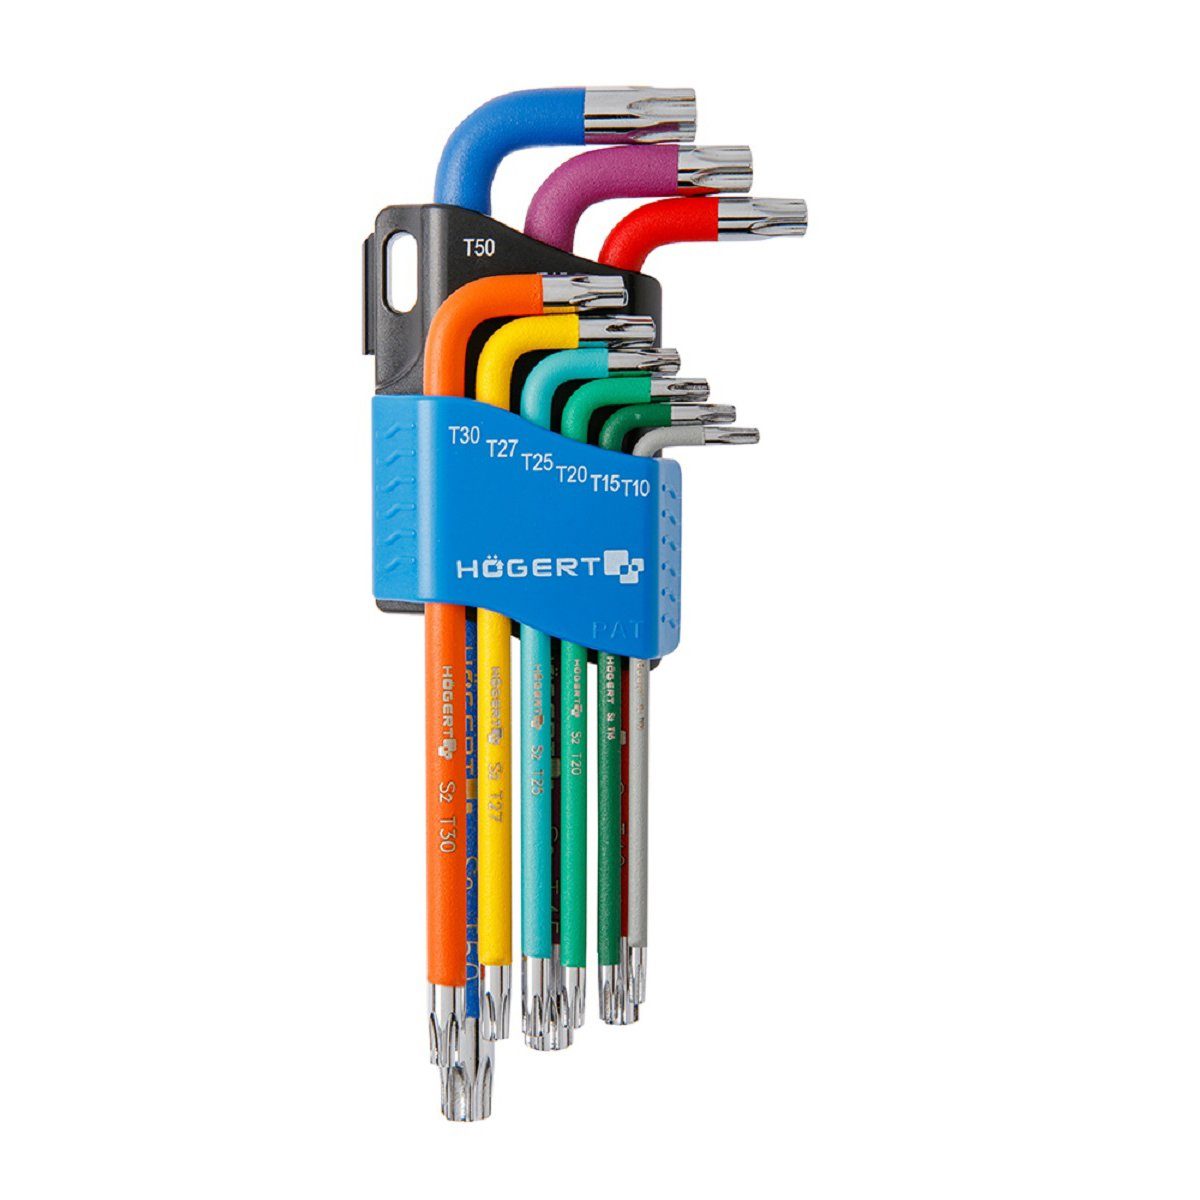 Sechsrundschlüssel Werkzeugset Högert MS Werkzeug Set Beschläge Multicolor